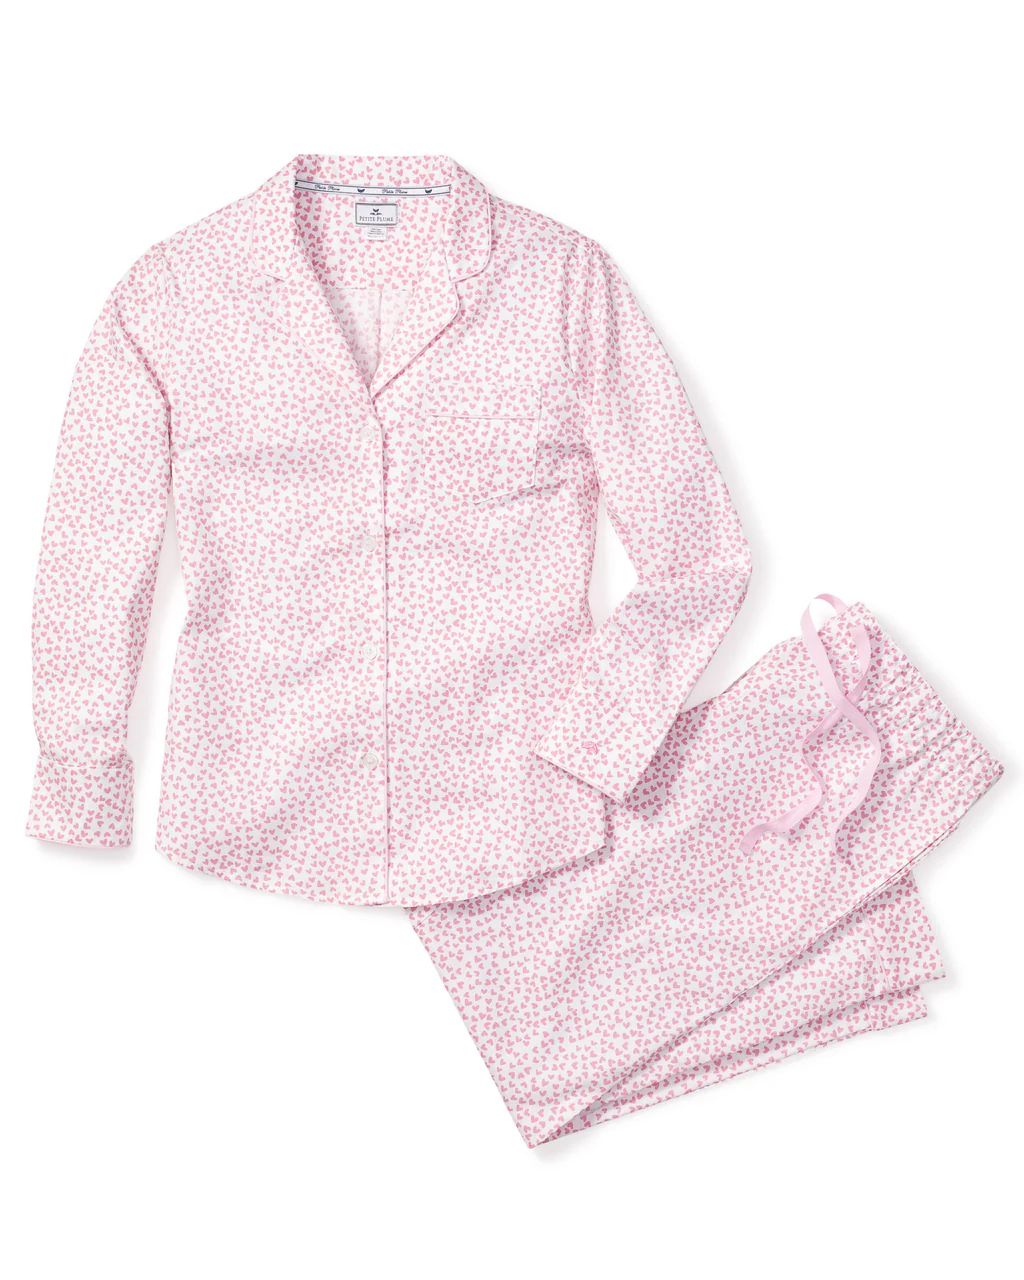 Women's Twill Pajama Set in Sweethearts | Petite Plume